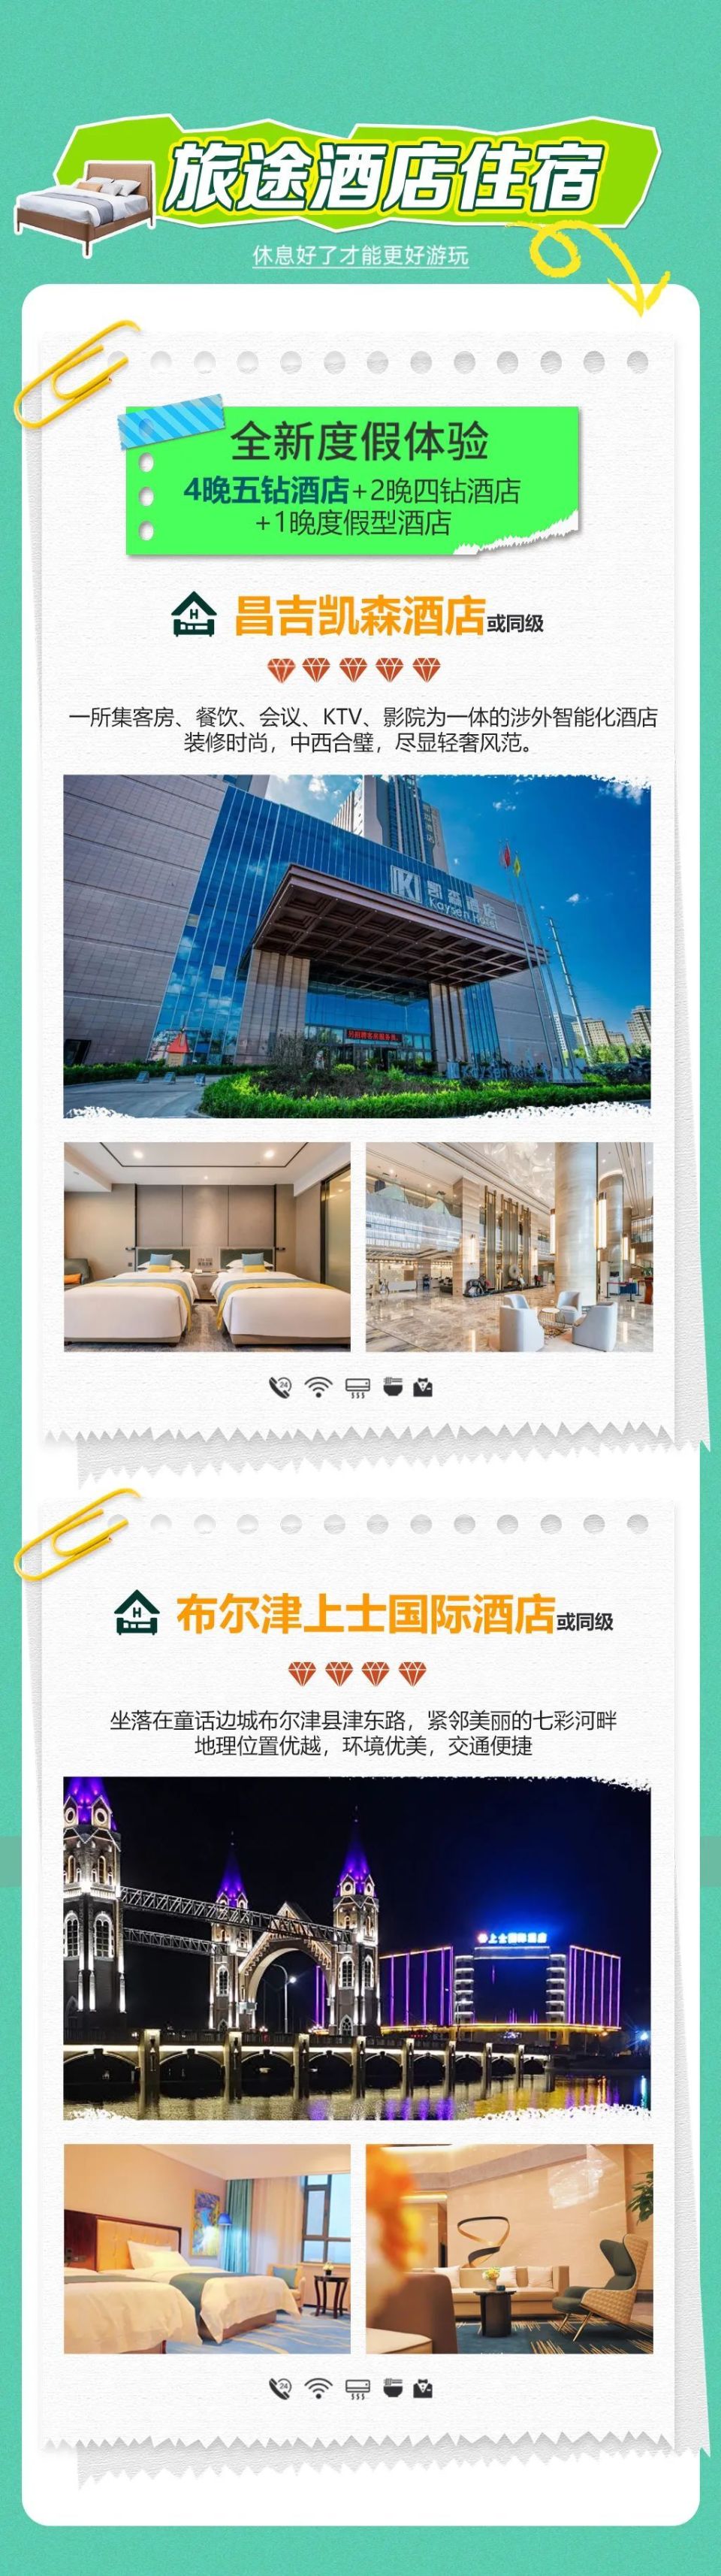 陇县尚德酒店图片